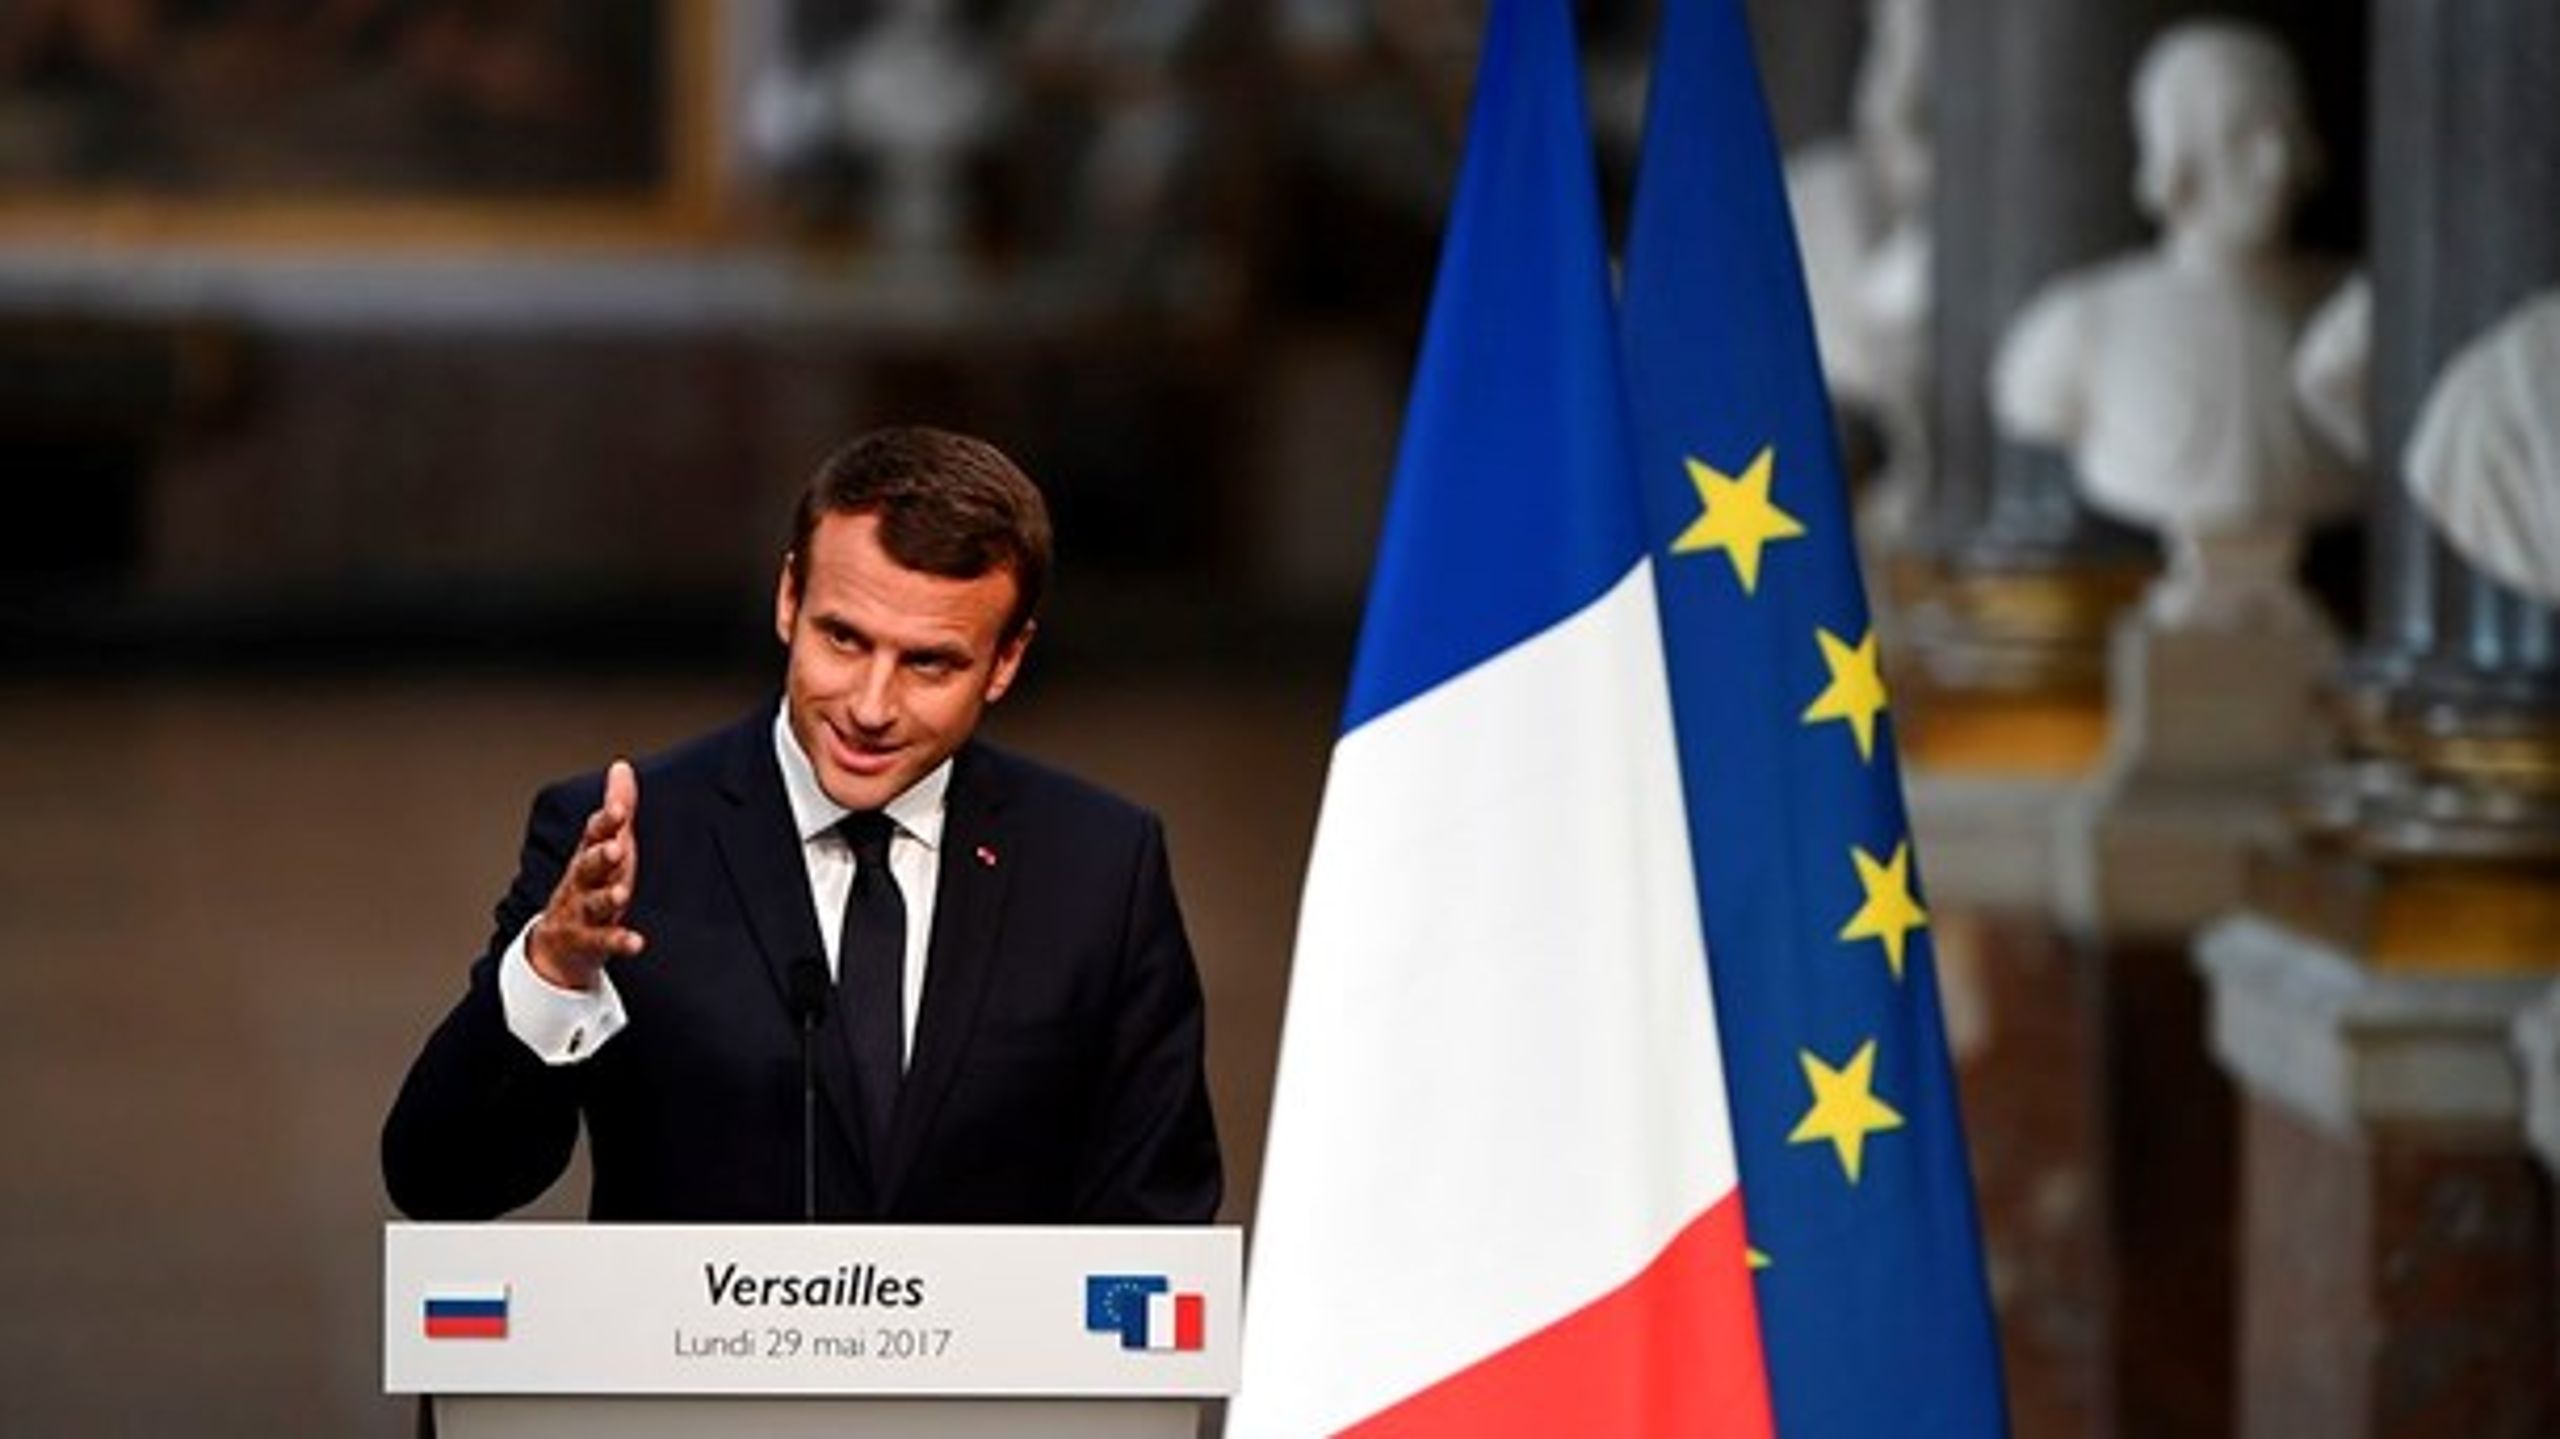 Emmanuel Macron skal forsøge at overbevise franskmændene om at give hans nystiftede parti, La République en Marche, et flertal i Nationalforsamlingen i den anden og afgørende runde af det franske parlamentsvalg.